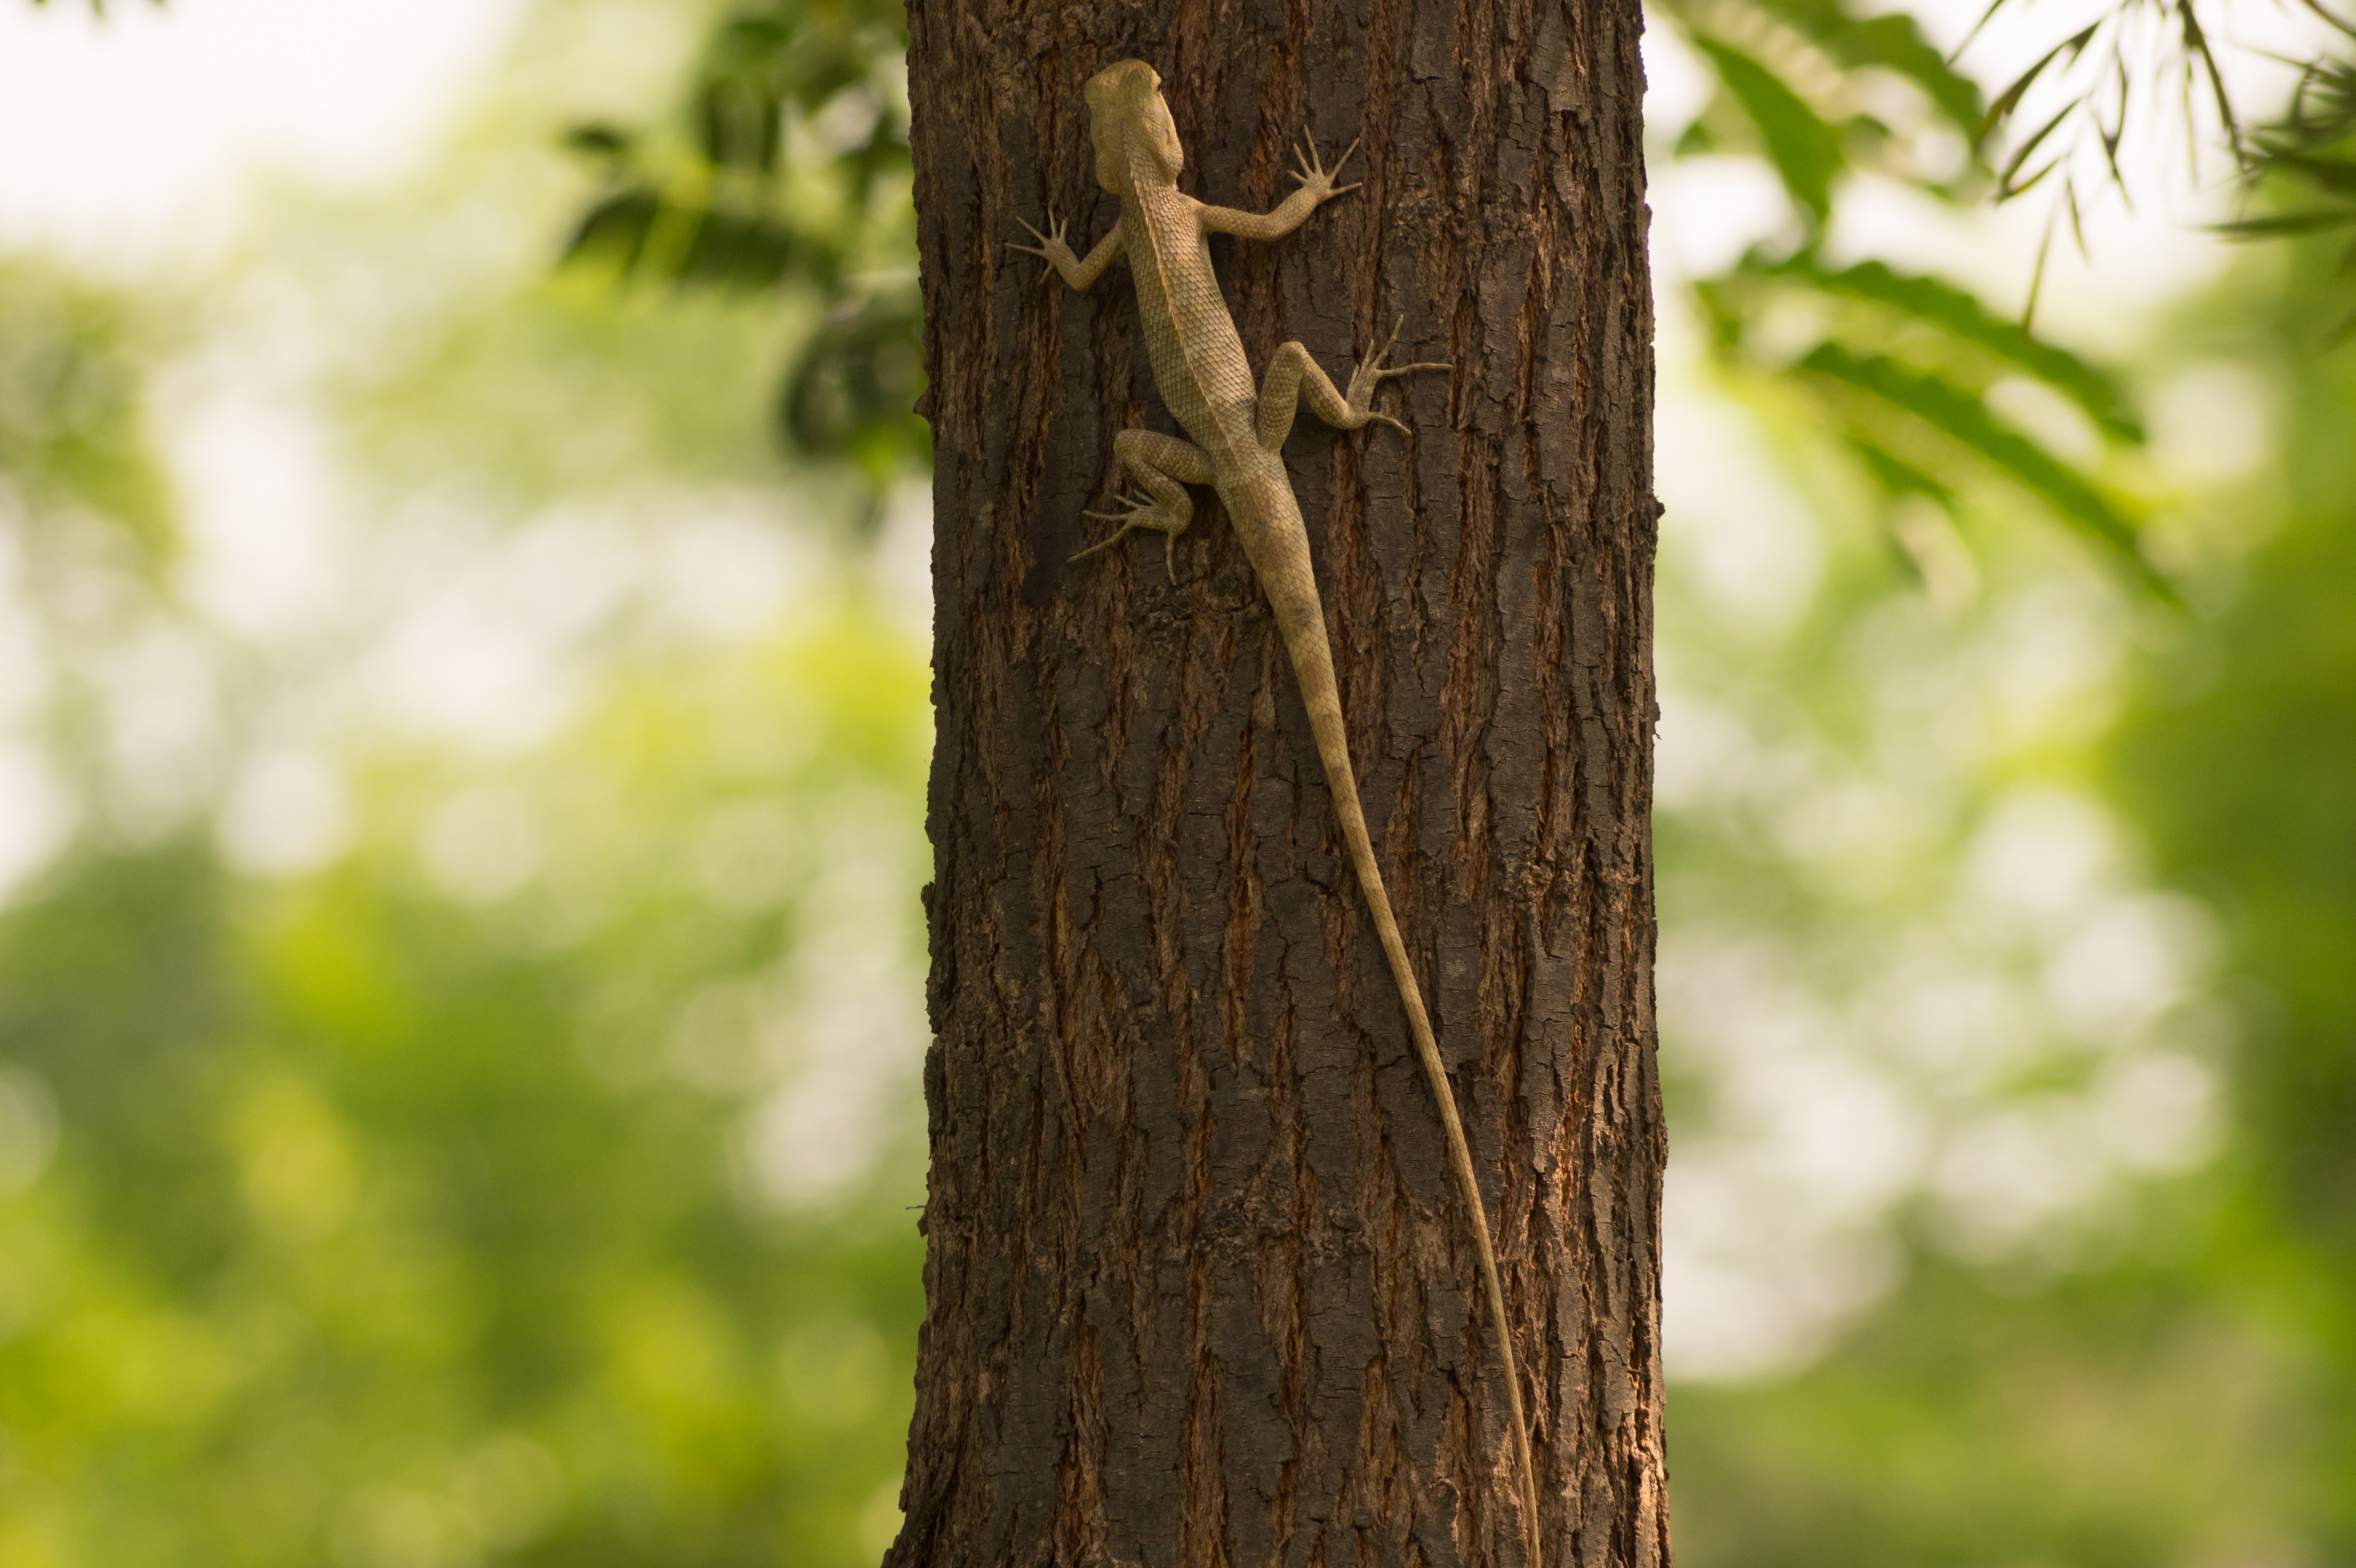 Oriental Garden Lizard in Patiala